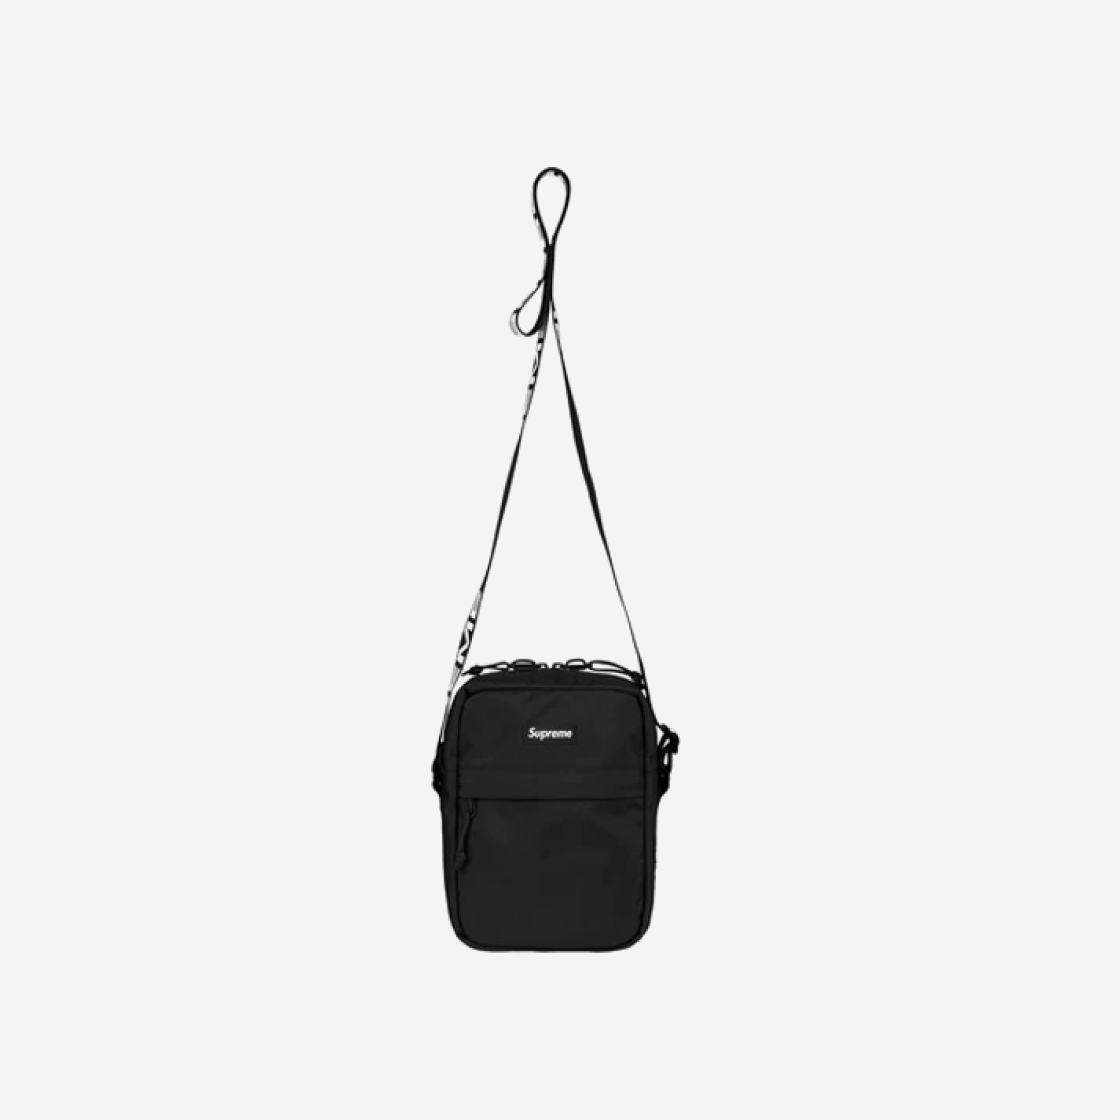 Supreme Shoulder Bag Black 18SS -